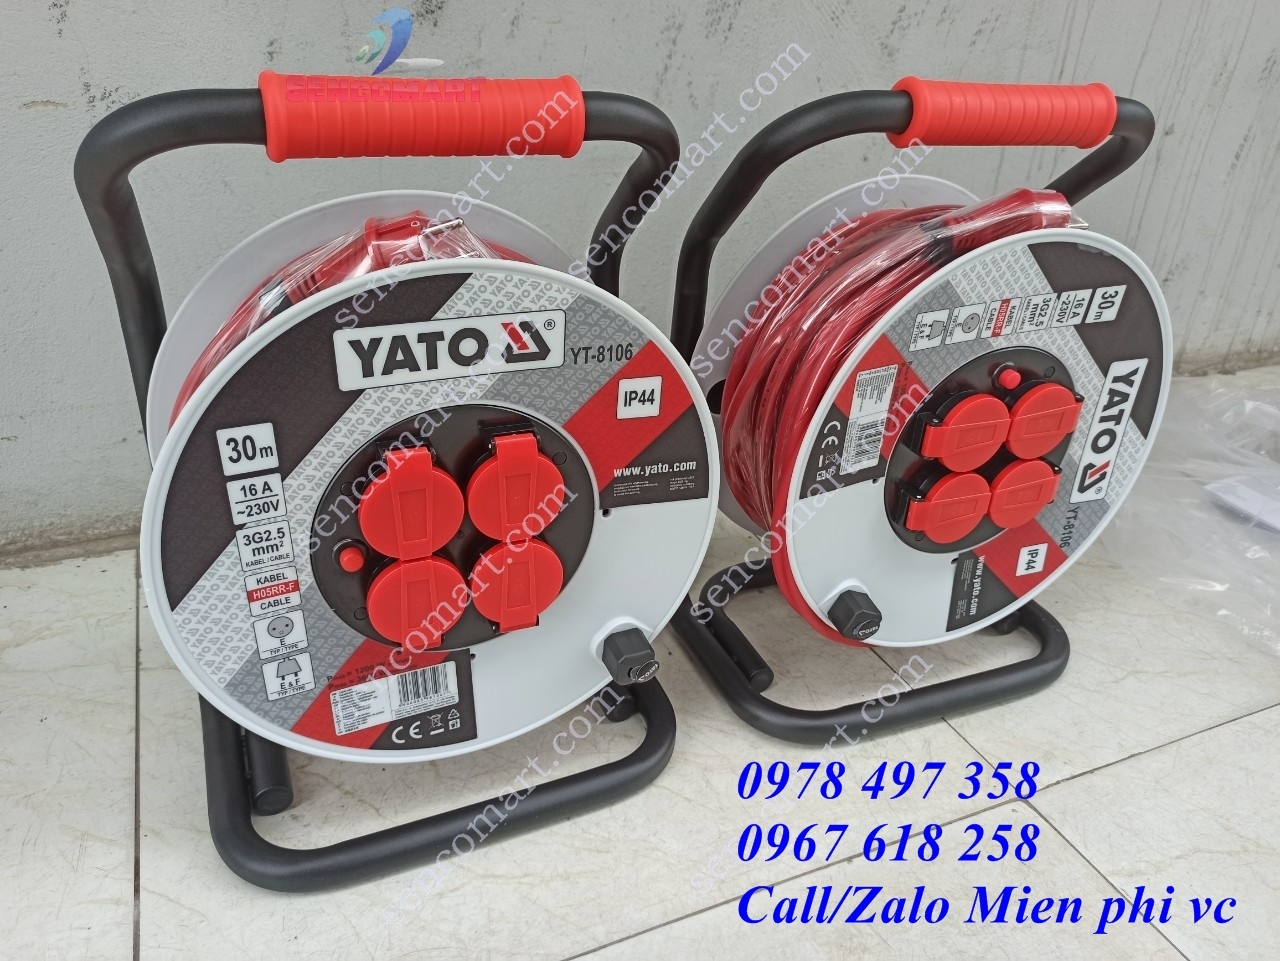 Cuộn dây điện rulo Yato YT-8106